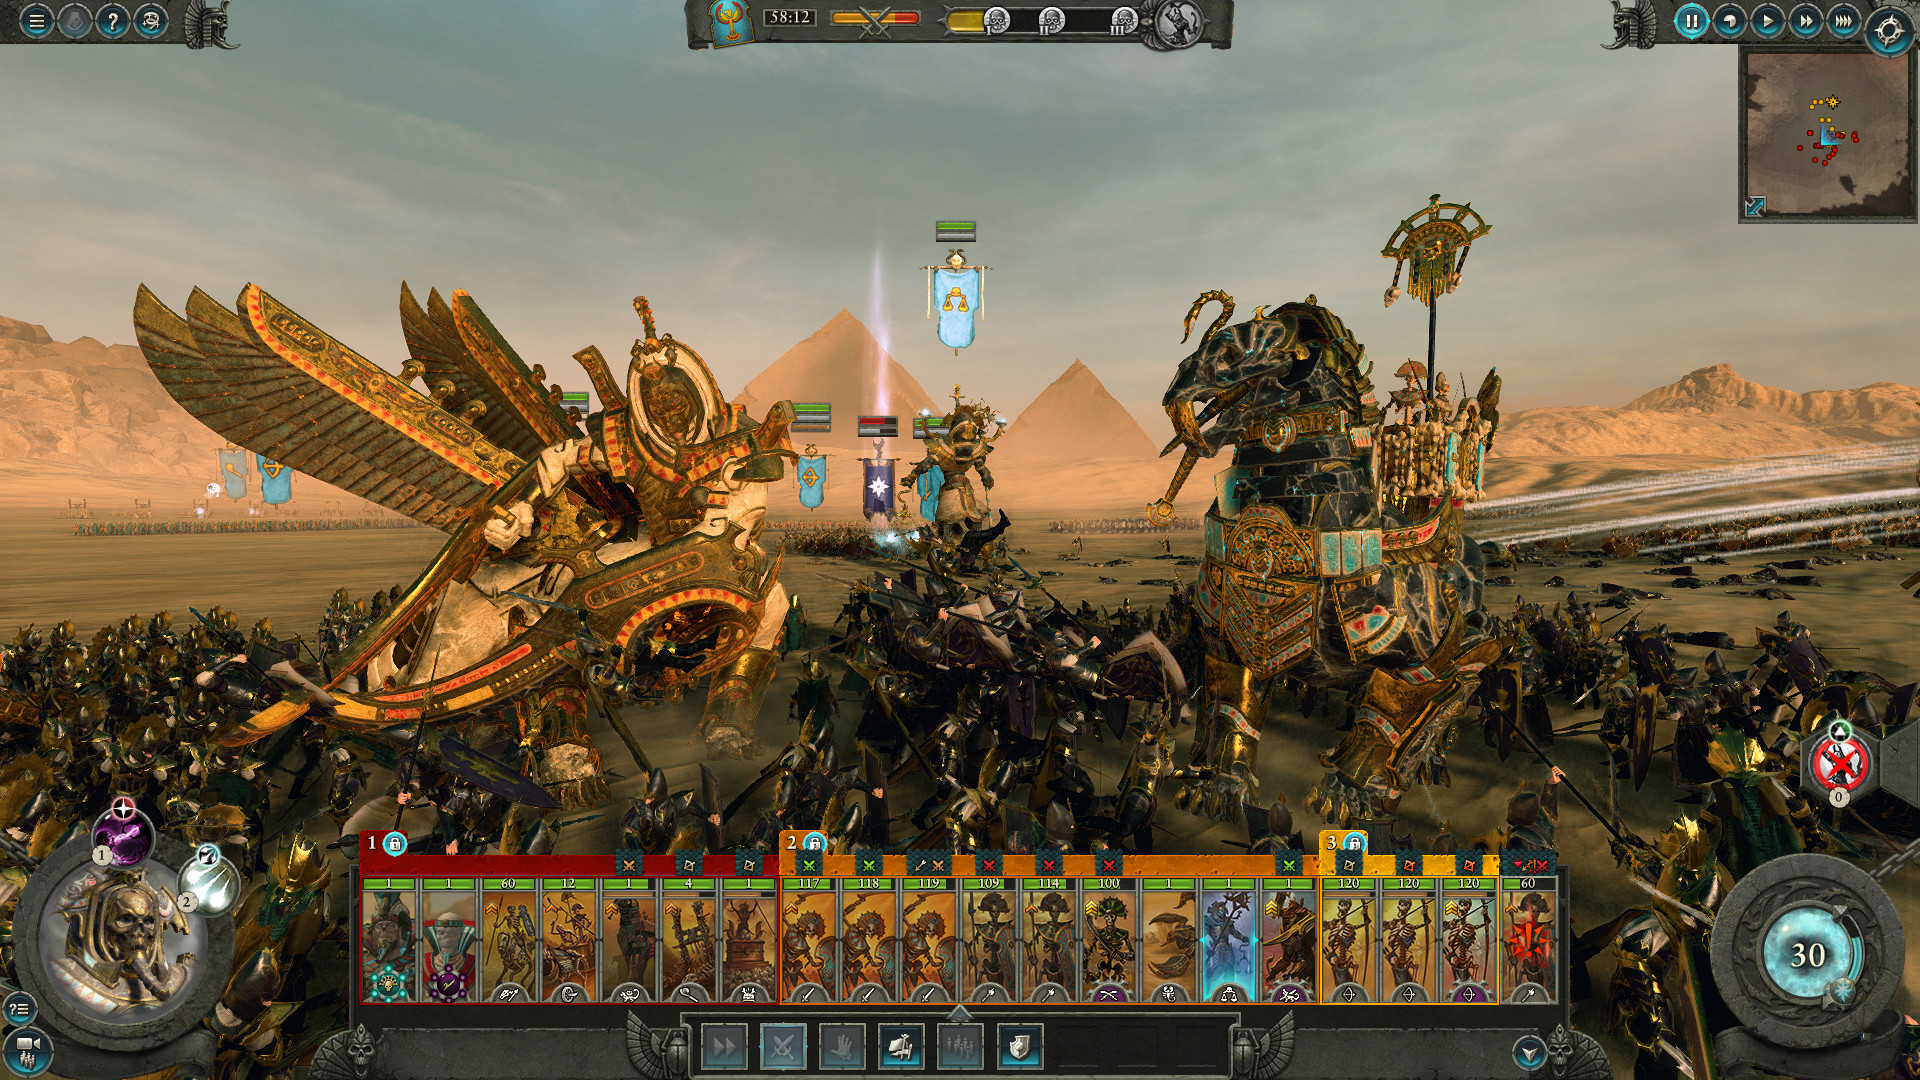 Kupit Total War Warhammer 2 Rise Of The Tomb Kings Pc Klyuch Novogo Dopolneniya Dlya Aktivacii V Steam Igromagaz